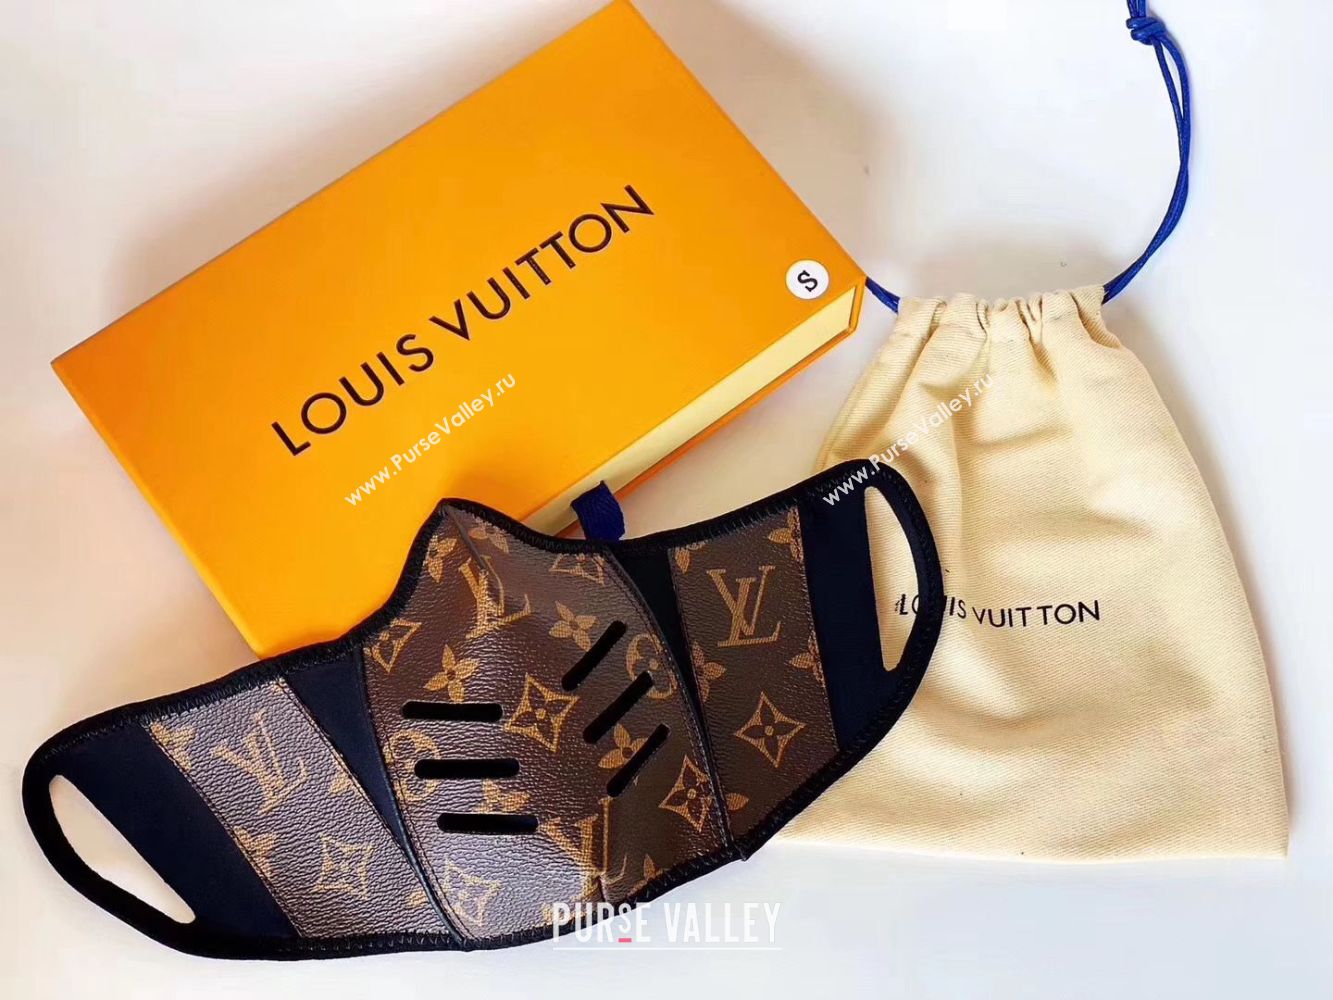 Louis Vuitton Monogram Canvas Masks M6666 Black